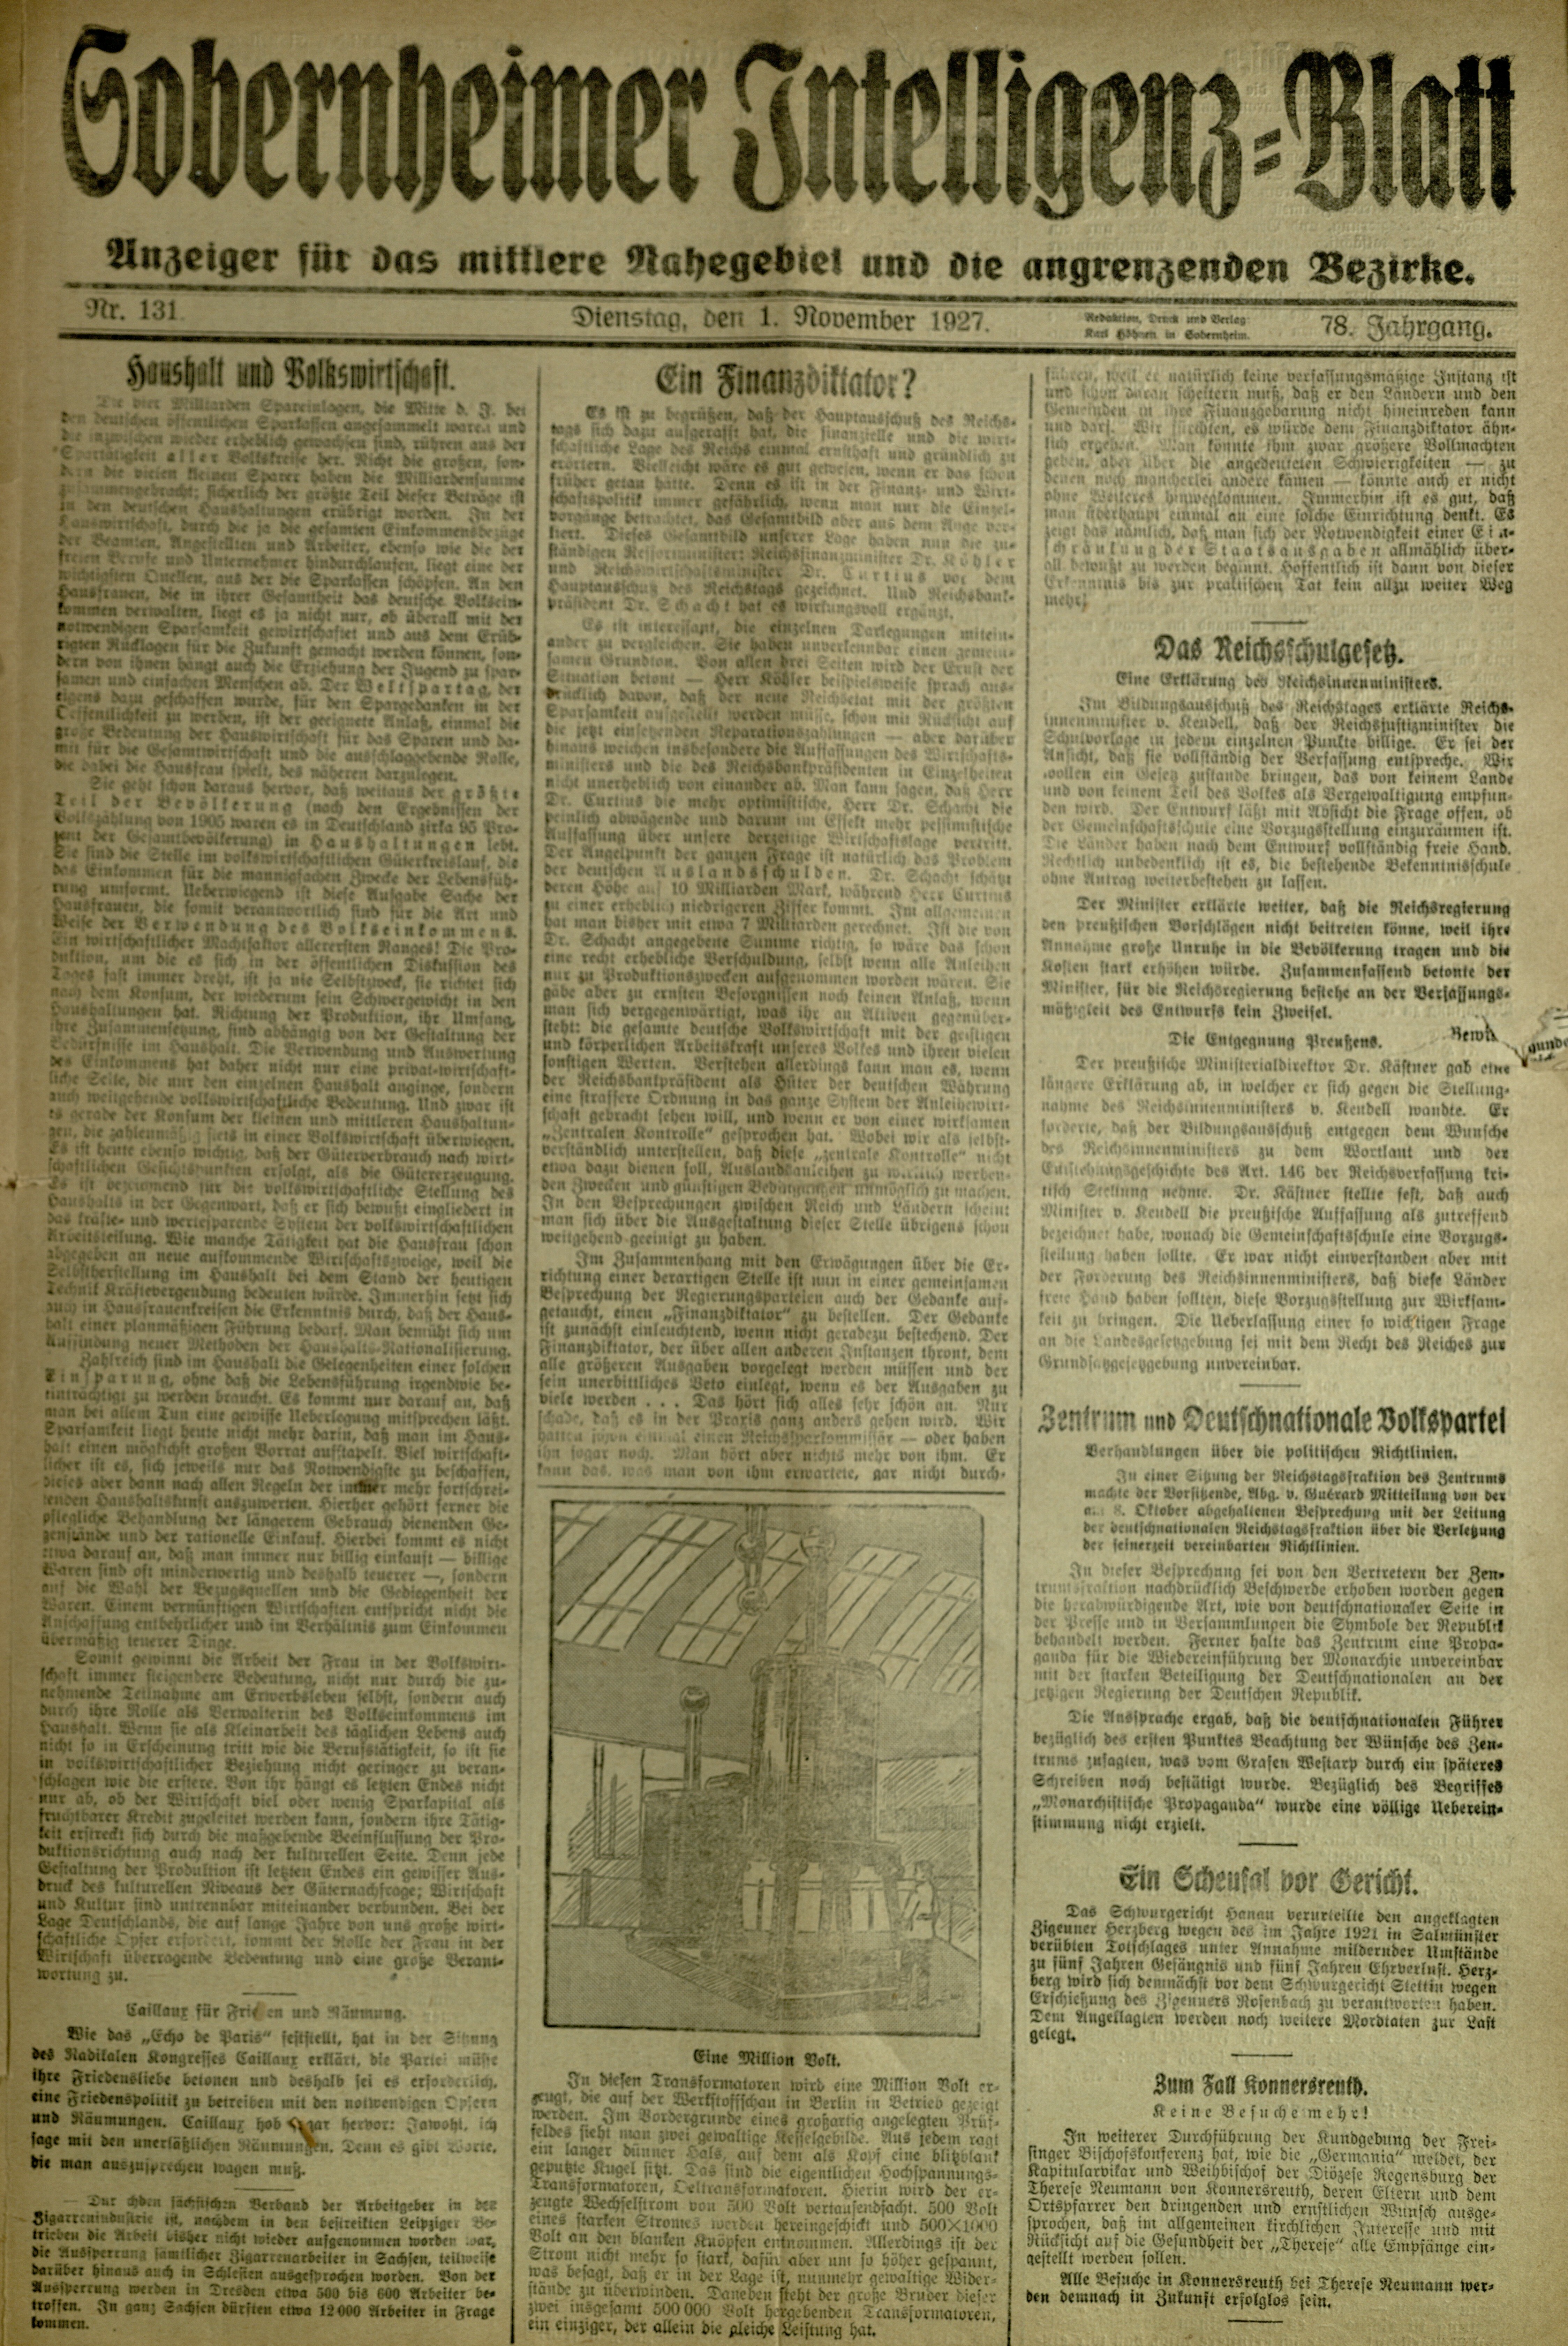 Zeitung: Sobernheimer Intelligenzblatt; November 1927, Jg. 78 Nr. 131 (Heimatmuseum Bad Sobernheim CC BY-NC-SA)